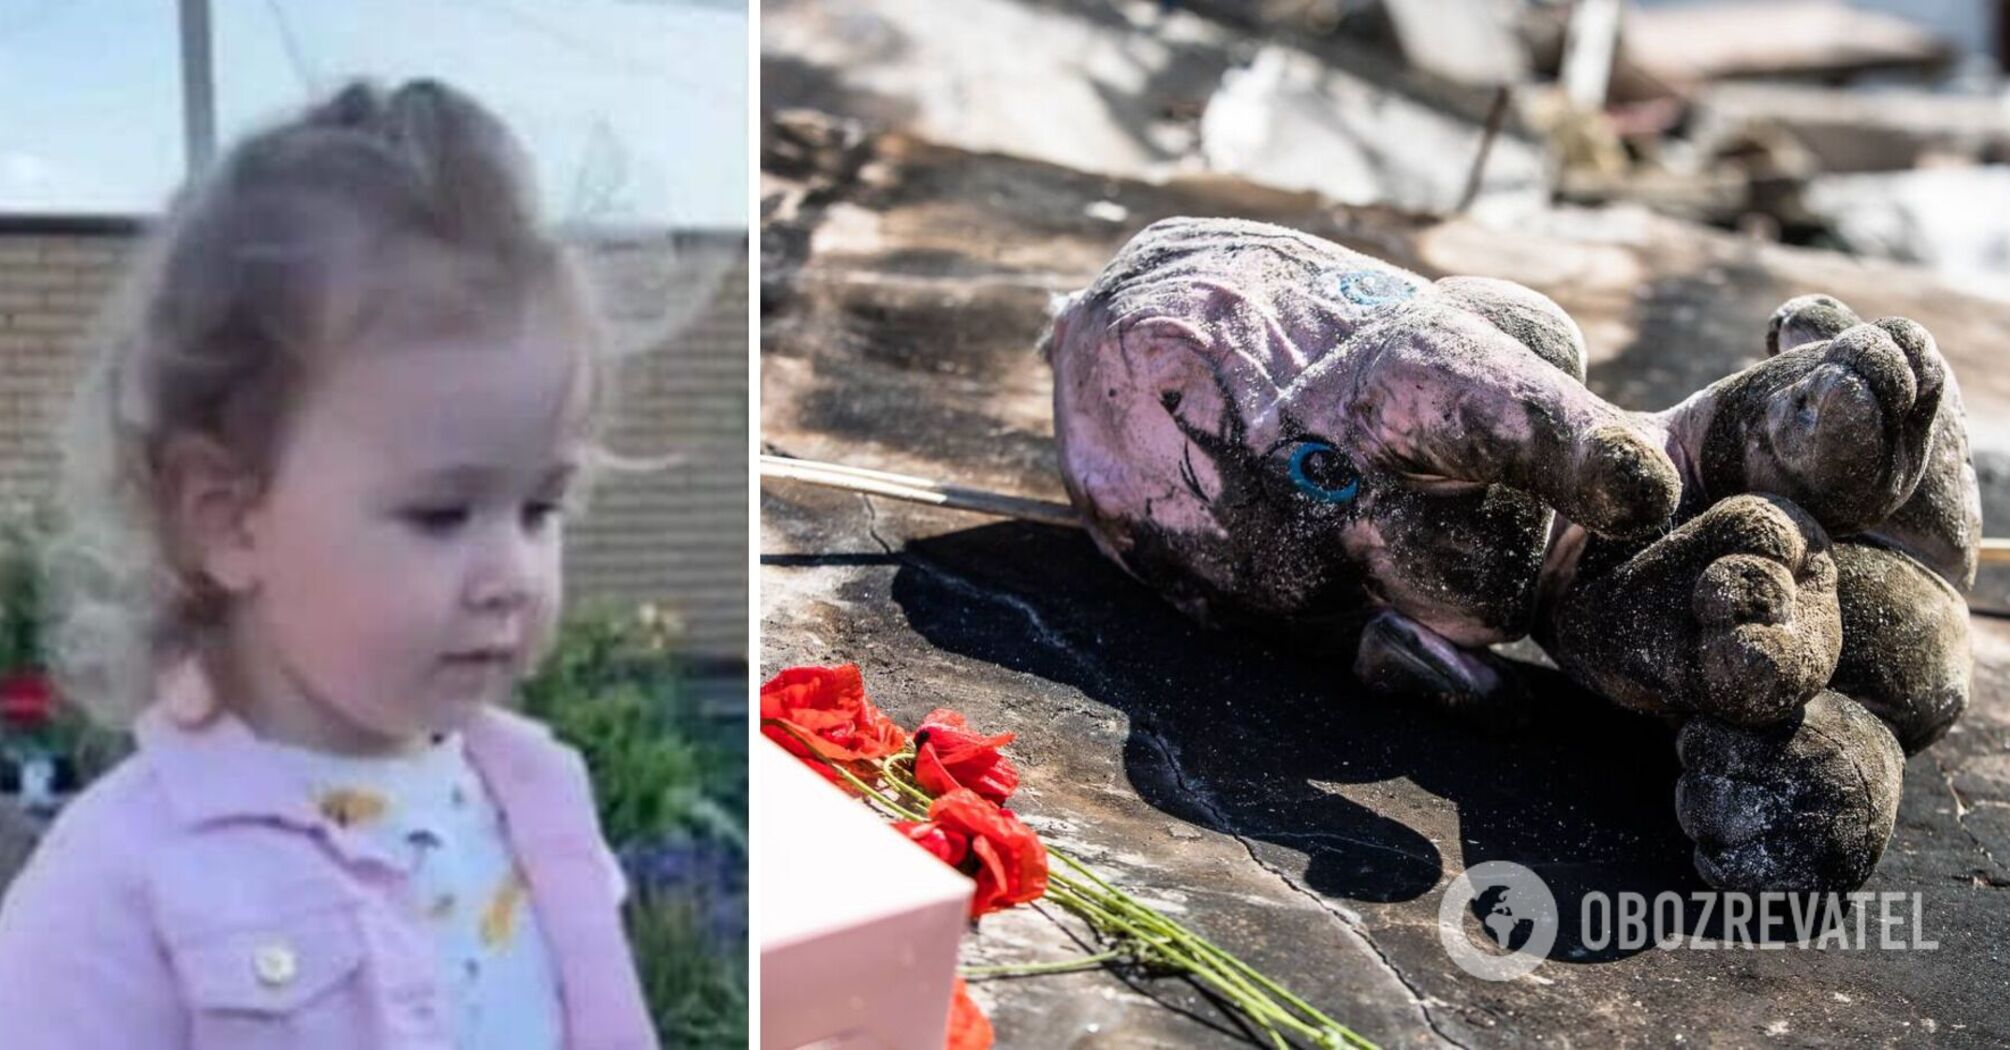 Matka zmarłej 2-letniej Lizy nie odzyskała jeszcze przytomności: nowe informacje o stanie ofiar ostrzału na przedmieściach Dniepropietrowska